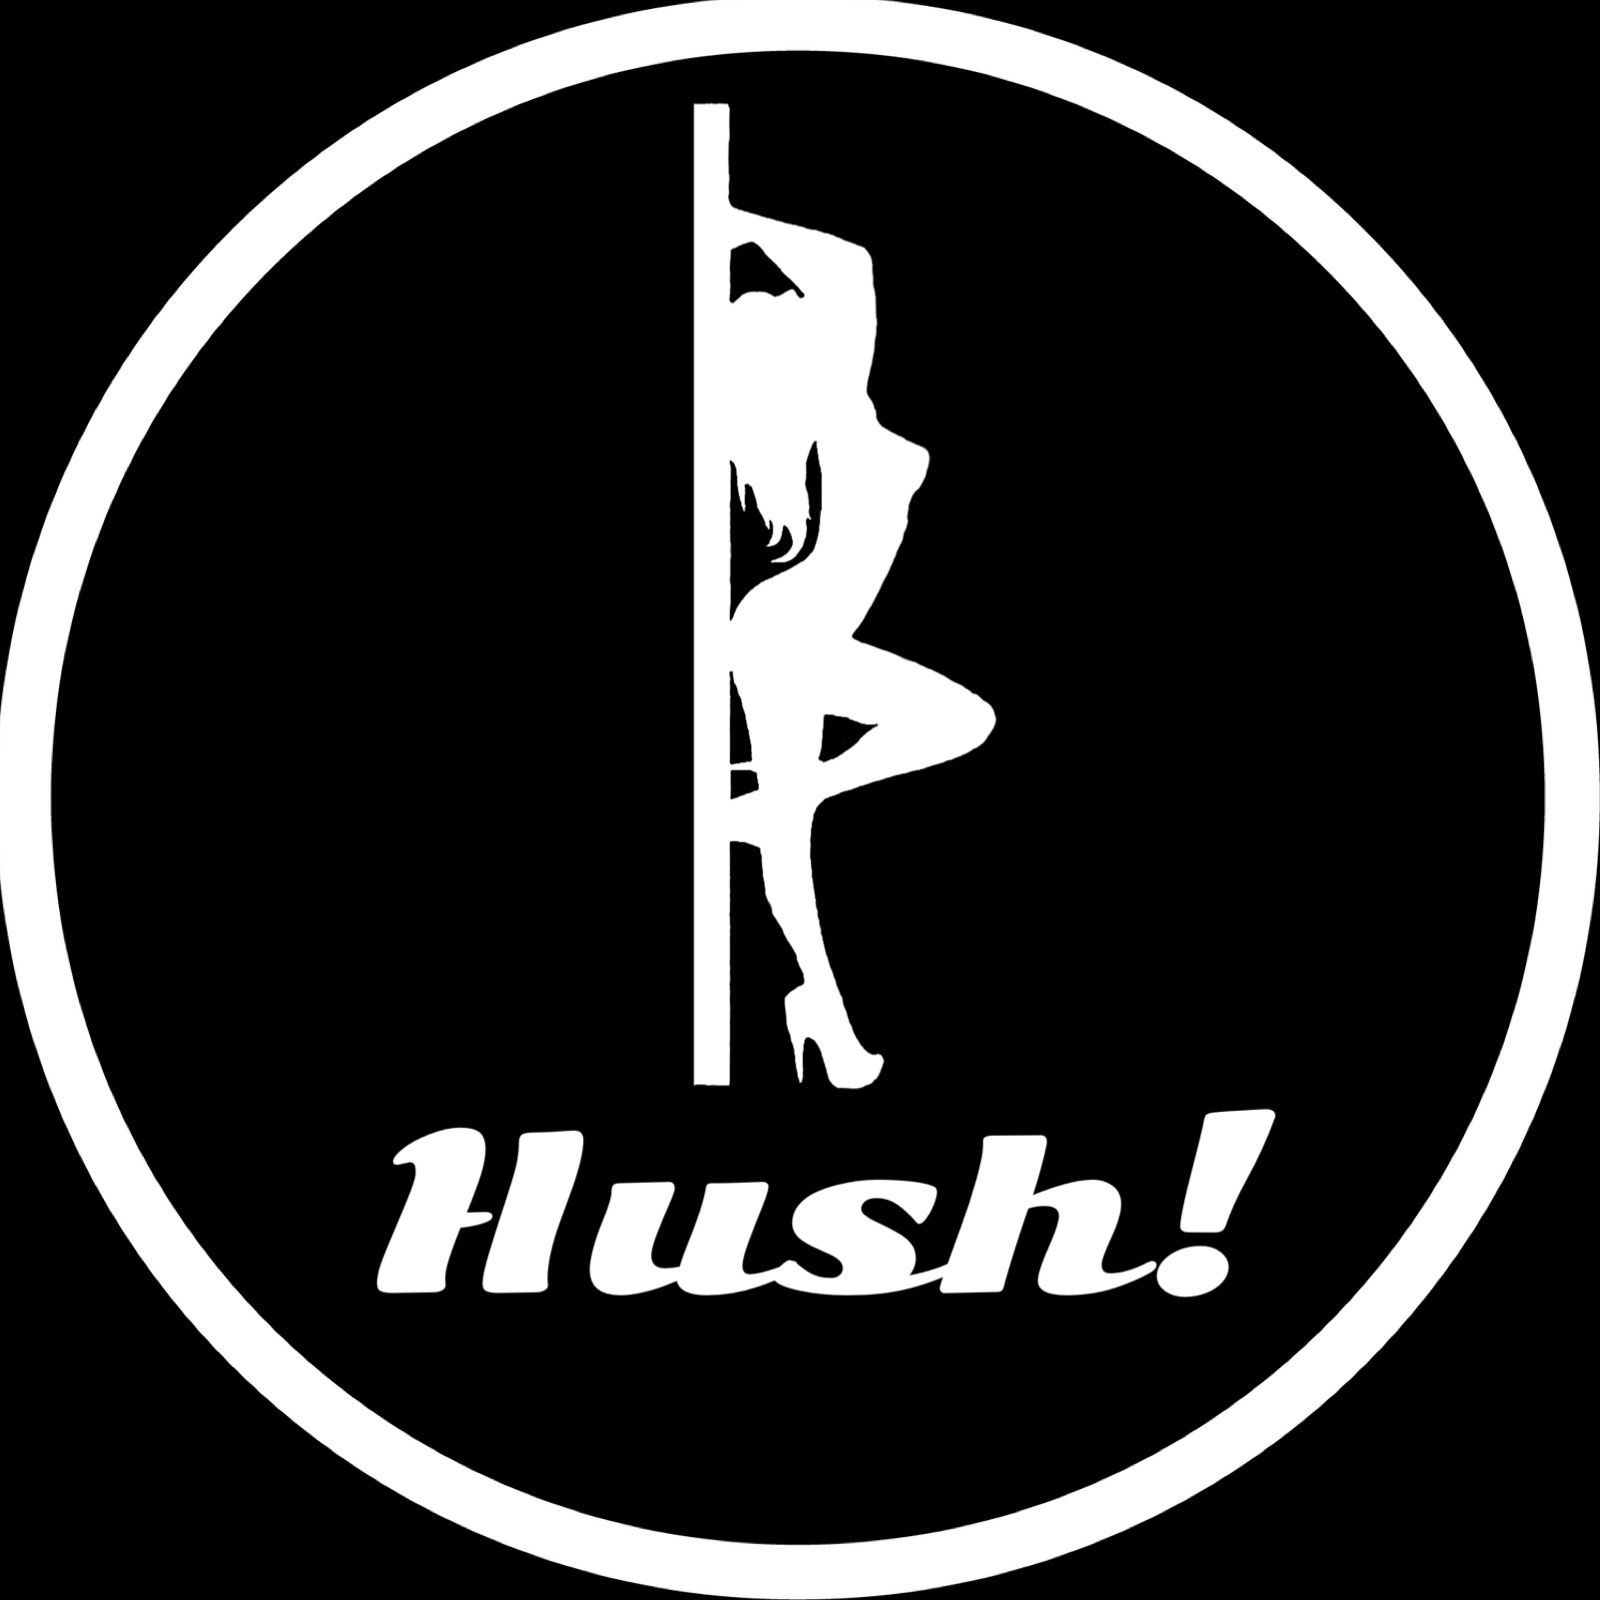 Hush! - Hush! Vol. 62- Marvelous Montage